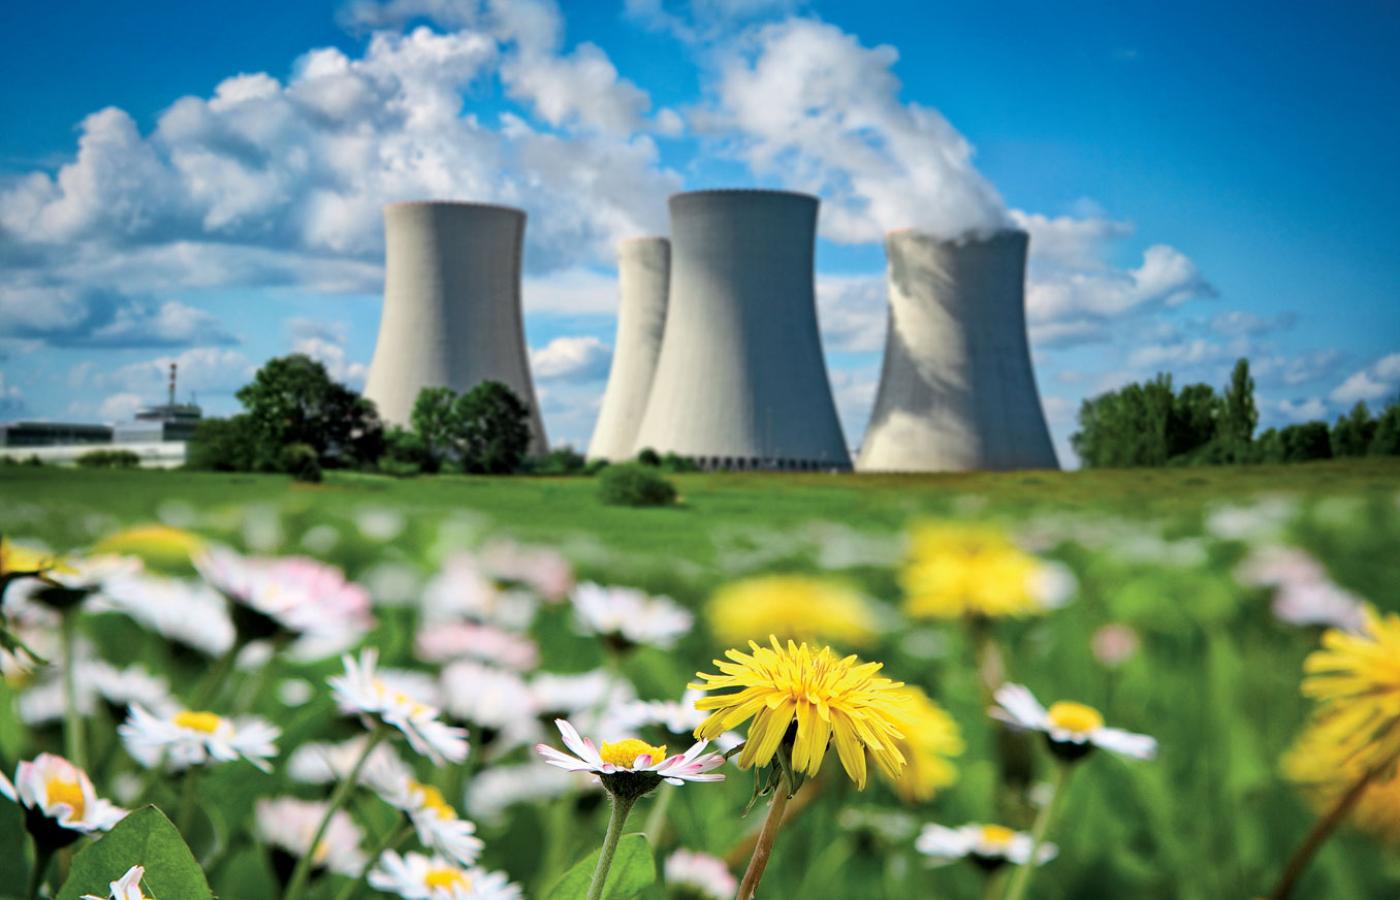 Energia jądrowa jest bardzo czysta i w porównaniu do innych sposobów wytwarzania energii bezpieczna, jednak obawy budzą rzadkie, ale spektakularne katastrofy